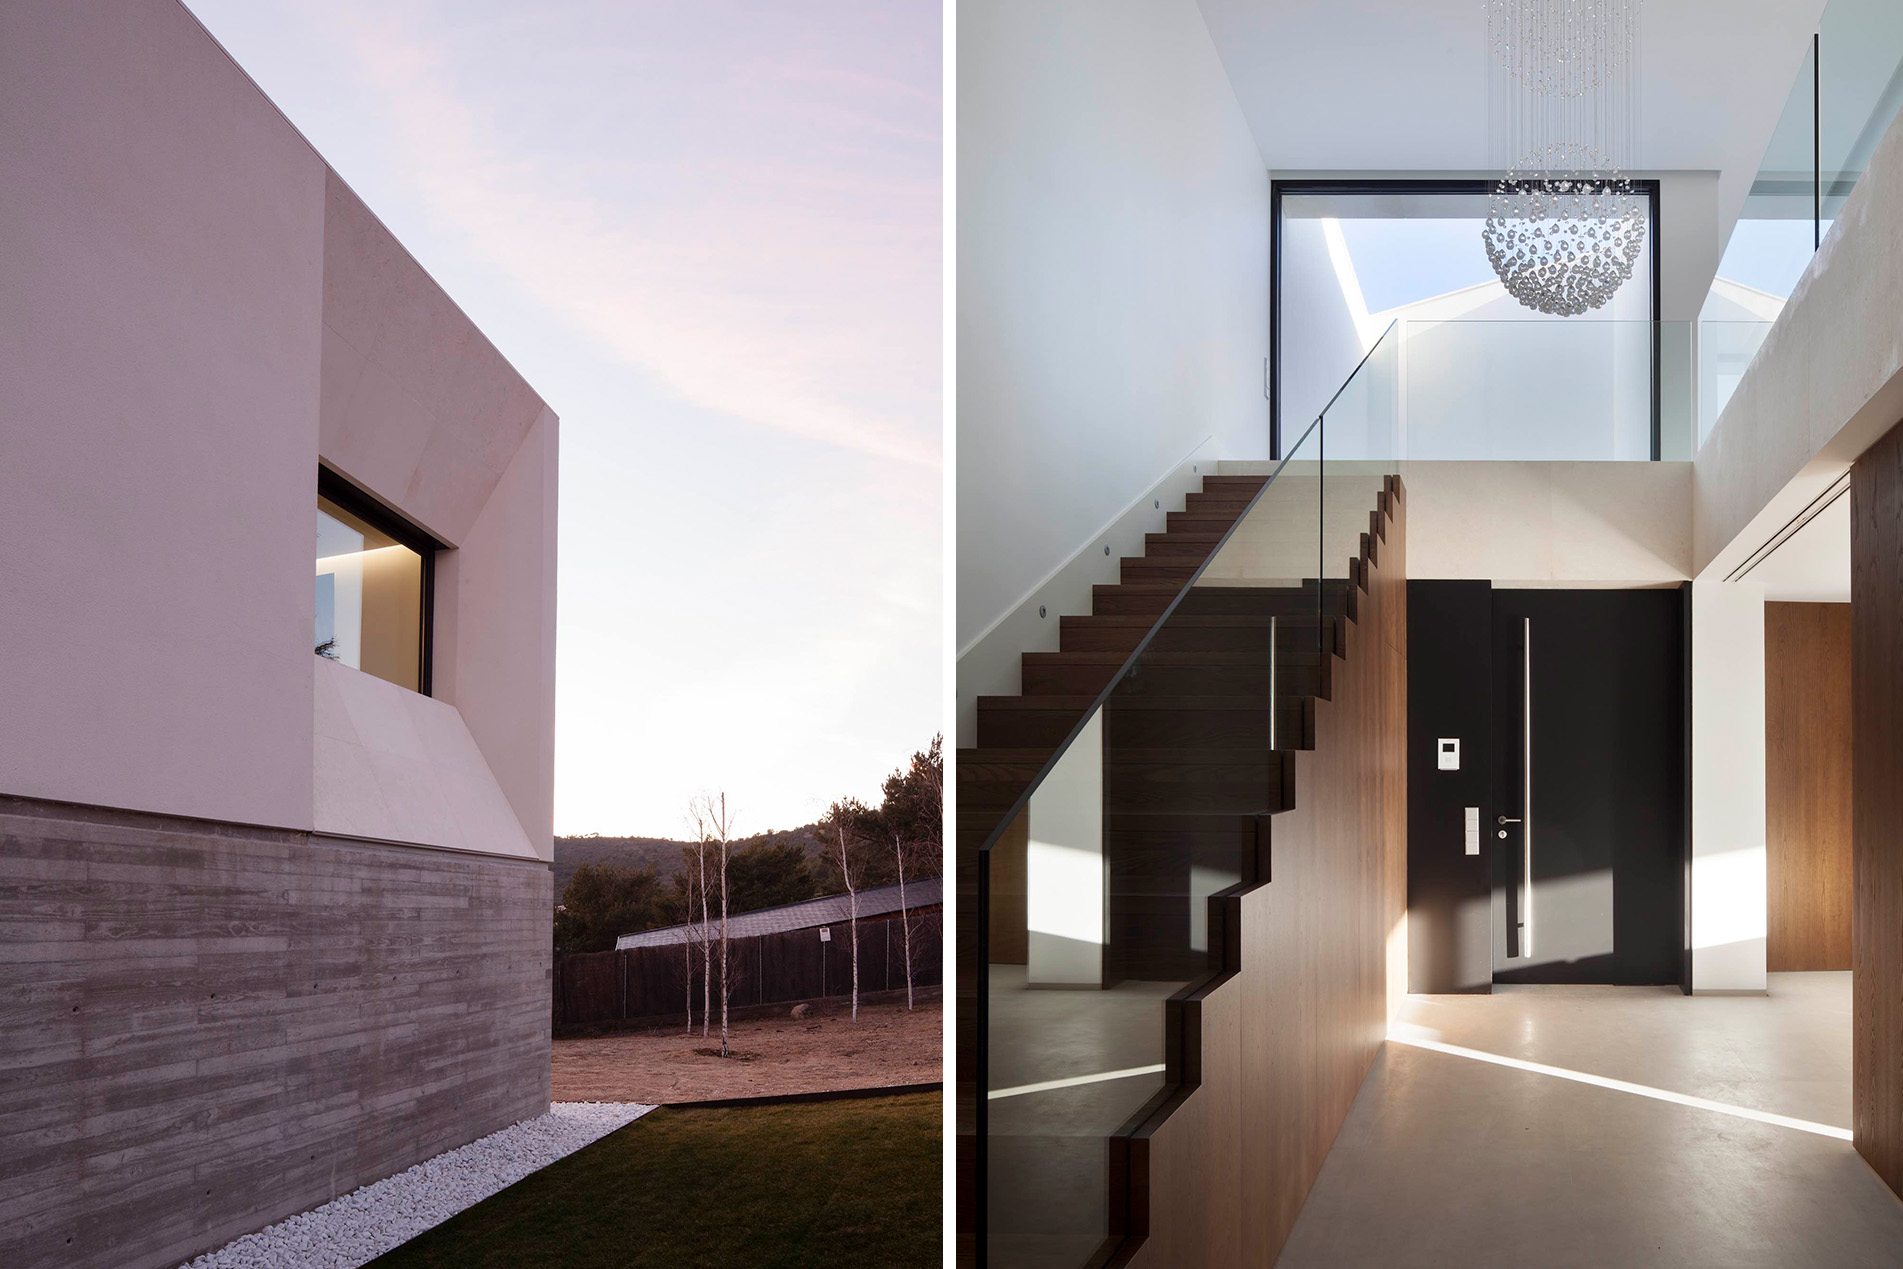 By MoRE_ Casa en Reajo del Roble_composición imagnes_detalle fachada acceso y vista escalera interior